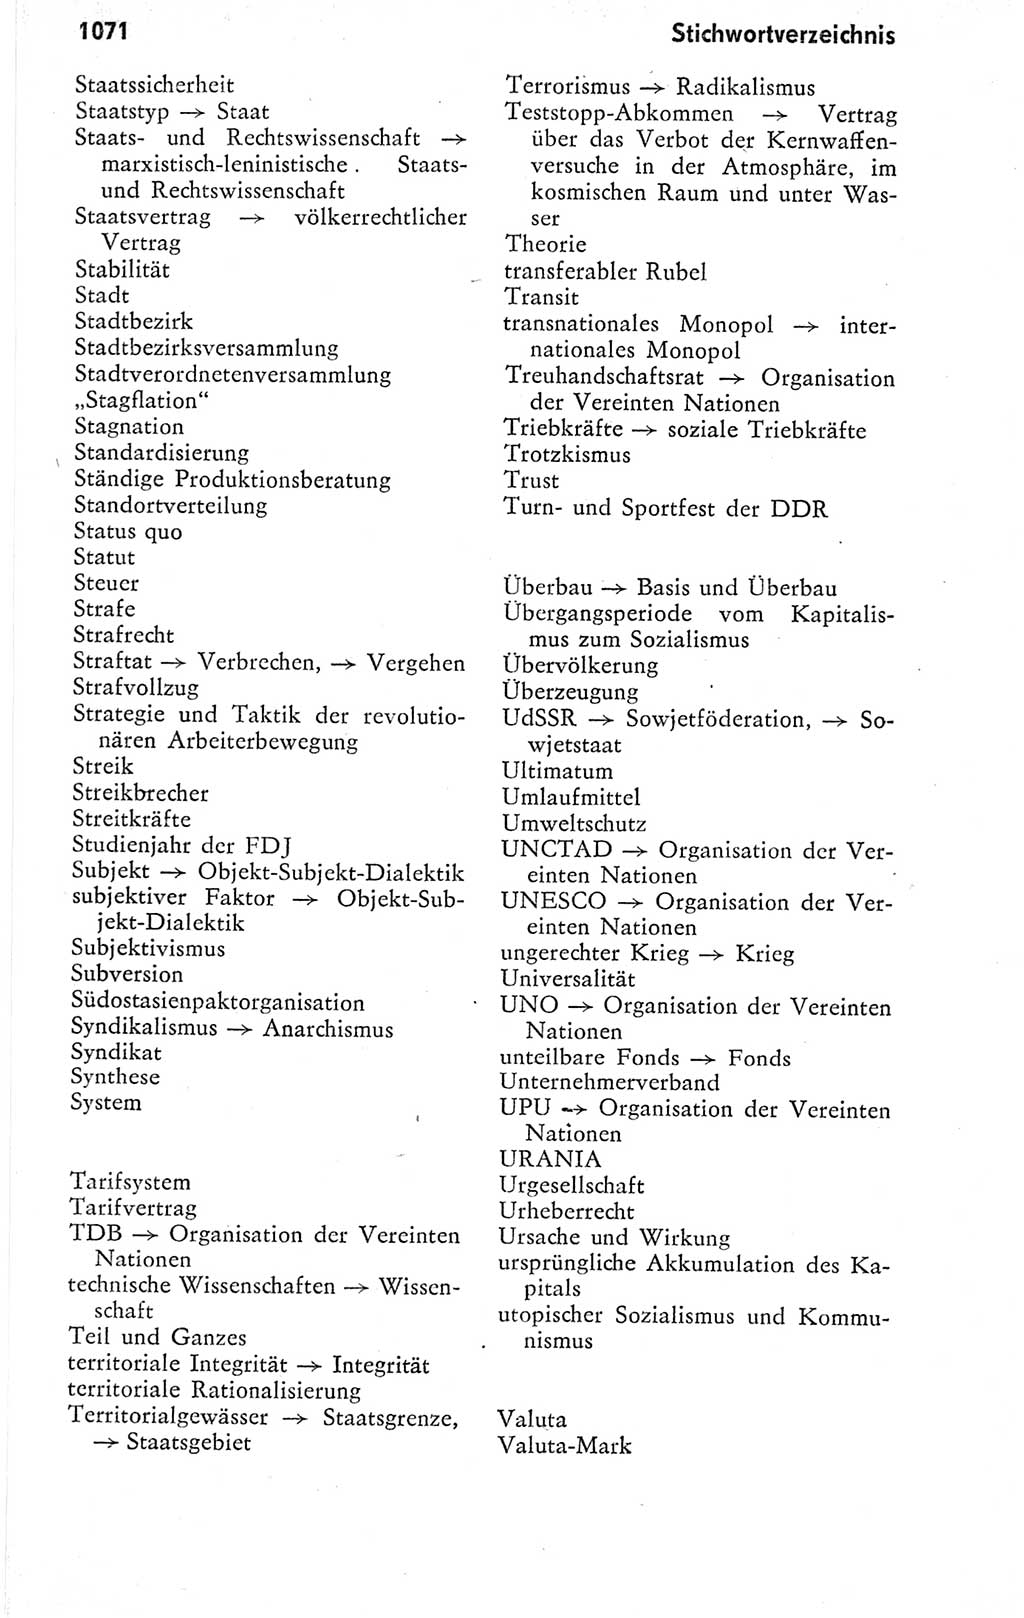 Kleines politisches Wörterbuch [Deutsche Demokratische Republik (DDR)] 1978, Seite 1071 (Kl. pol. Wb. DDR 1978, S. 1071)